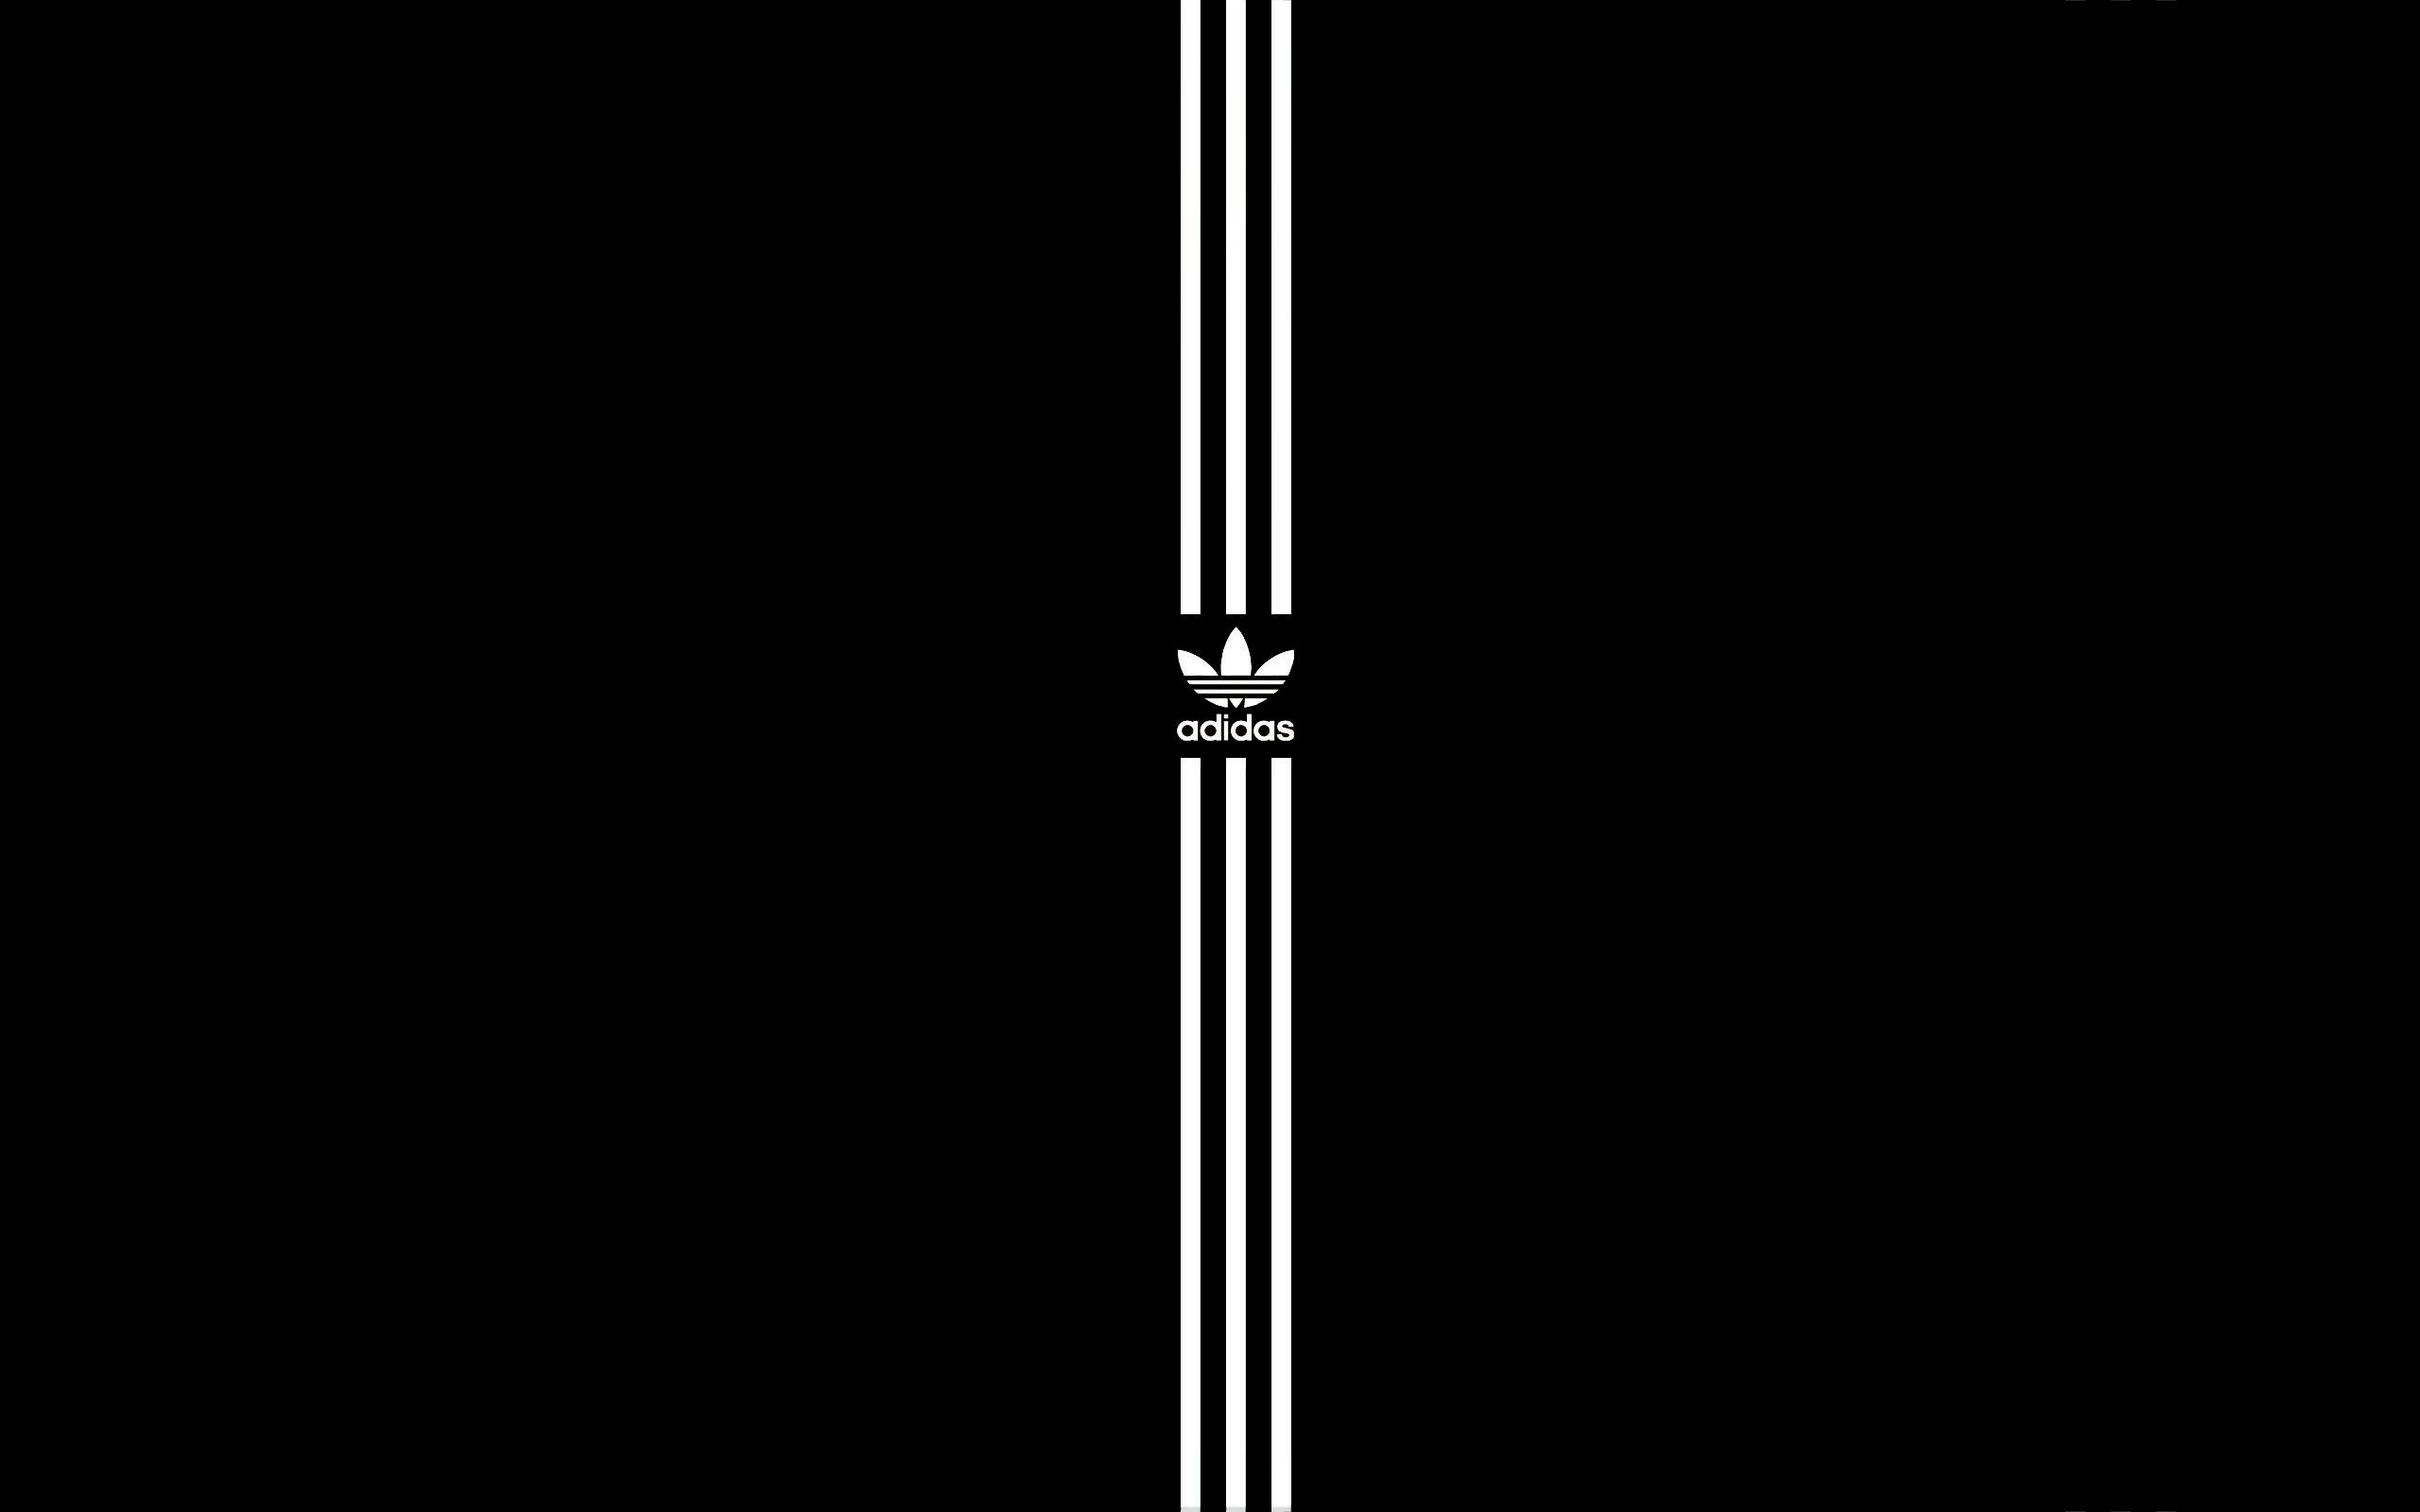 Onvervangbaar breken haspel Adidas Logo Wallpaper (71+ pictures)